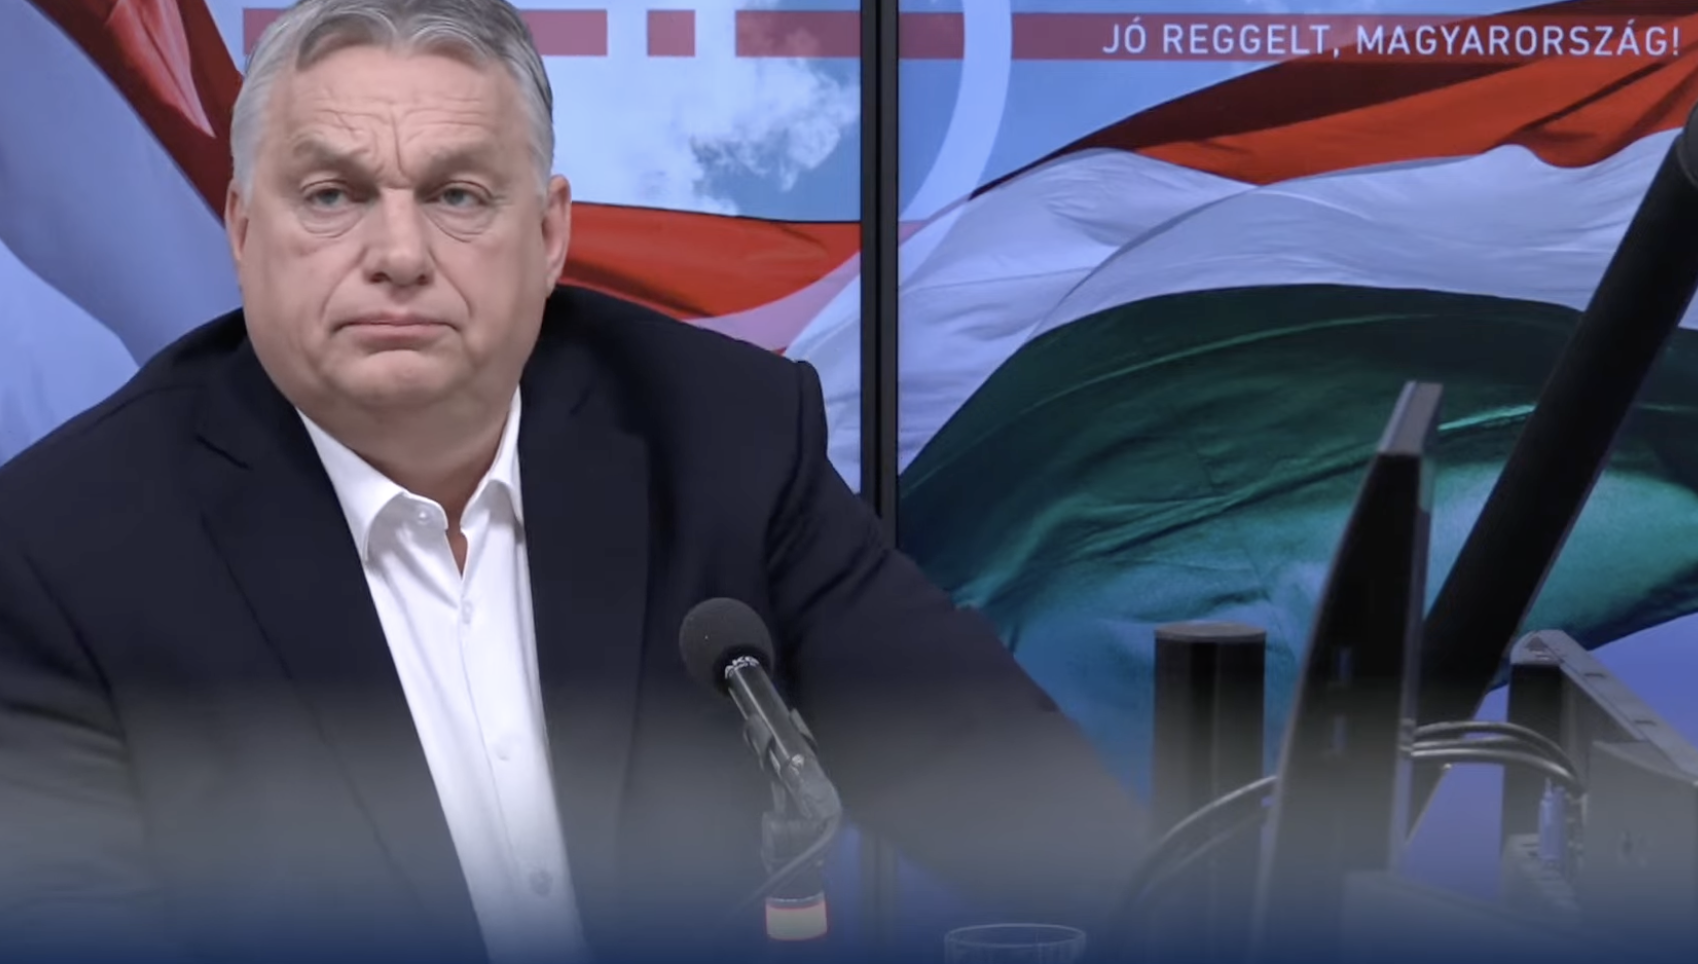 Orbán Viktor a gyermekotthonok átvilágításáról: A vizsgálatnak ki kell térnie az életvitelre, szexuális devianciára is